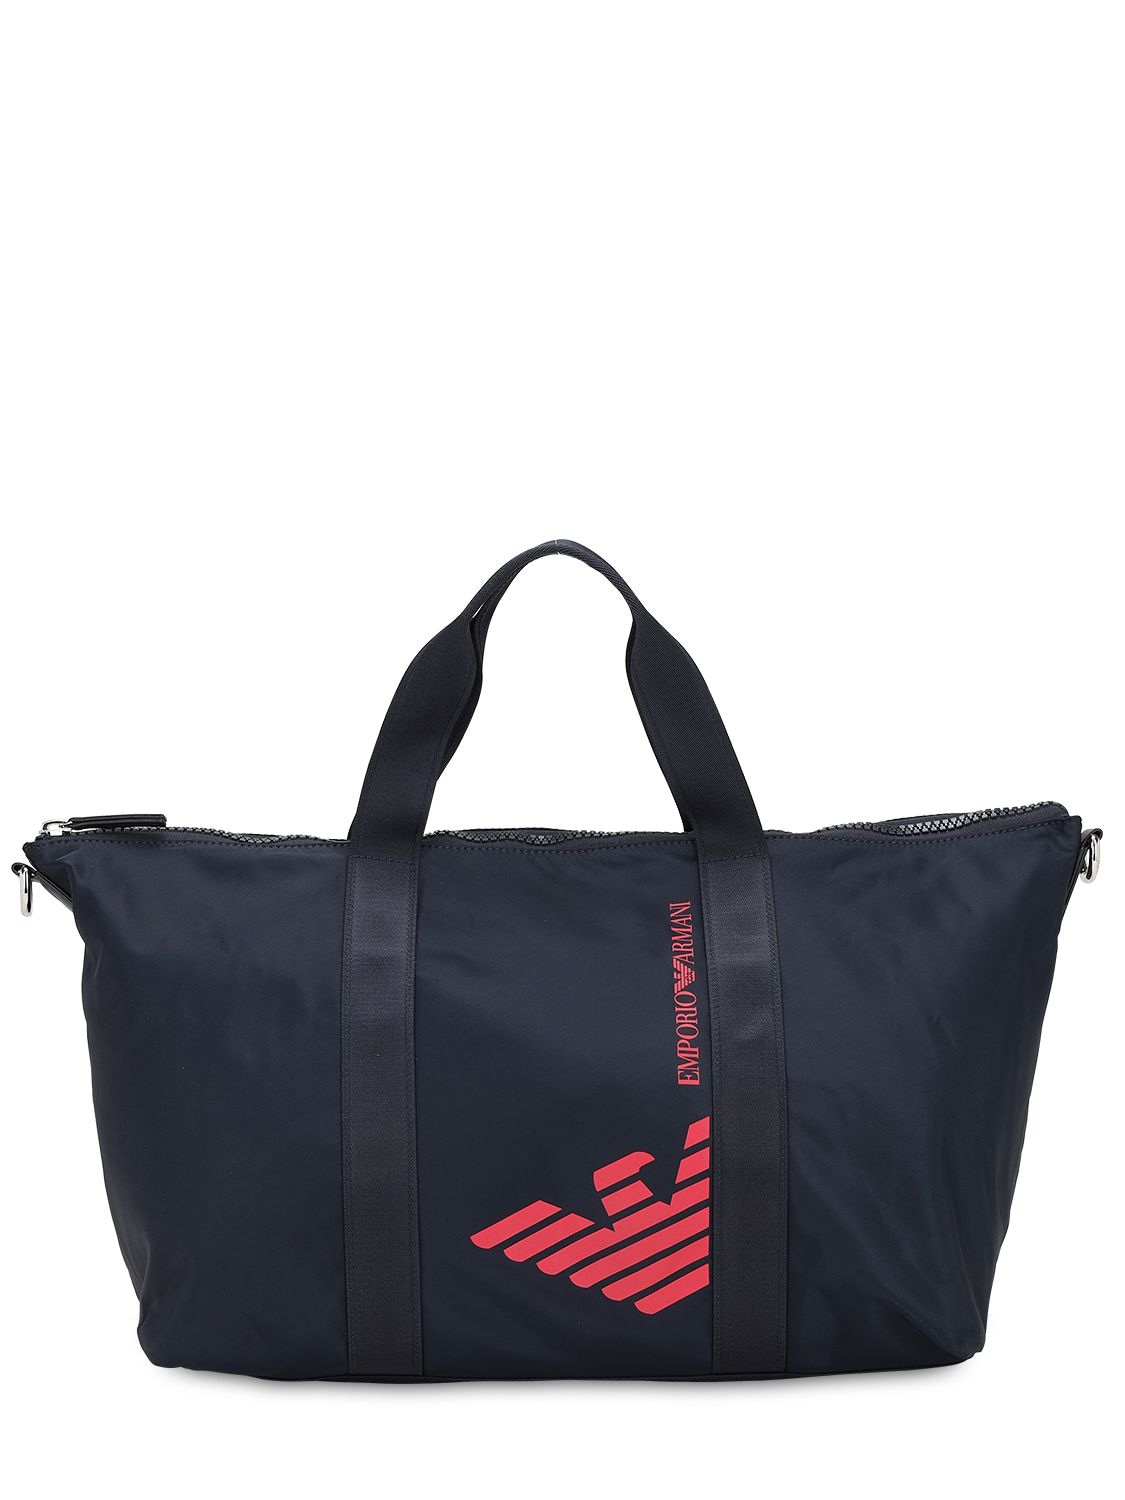 emporio armani beach bag